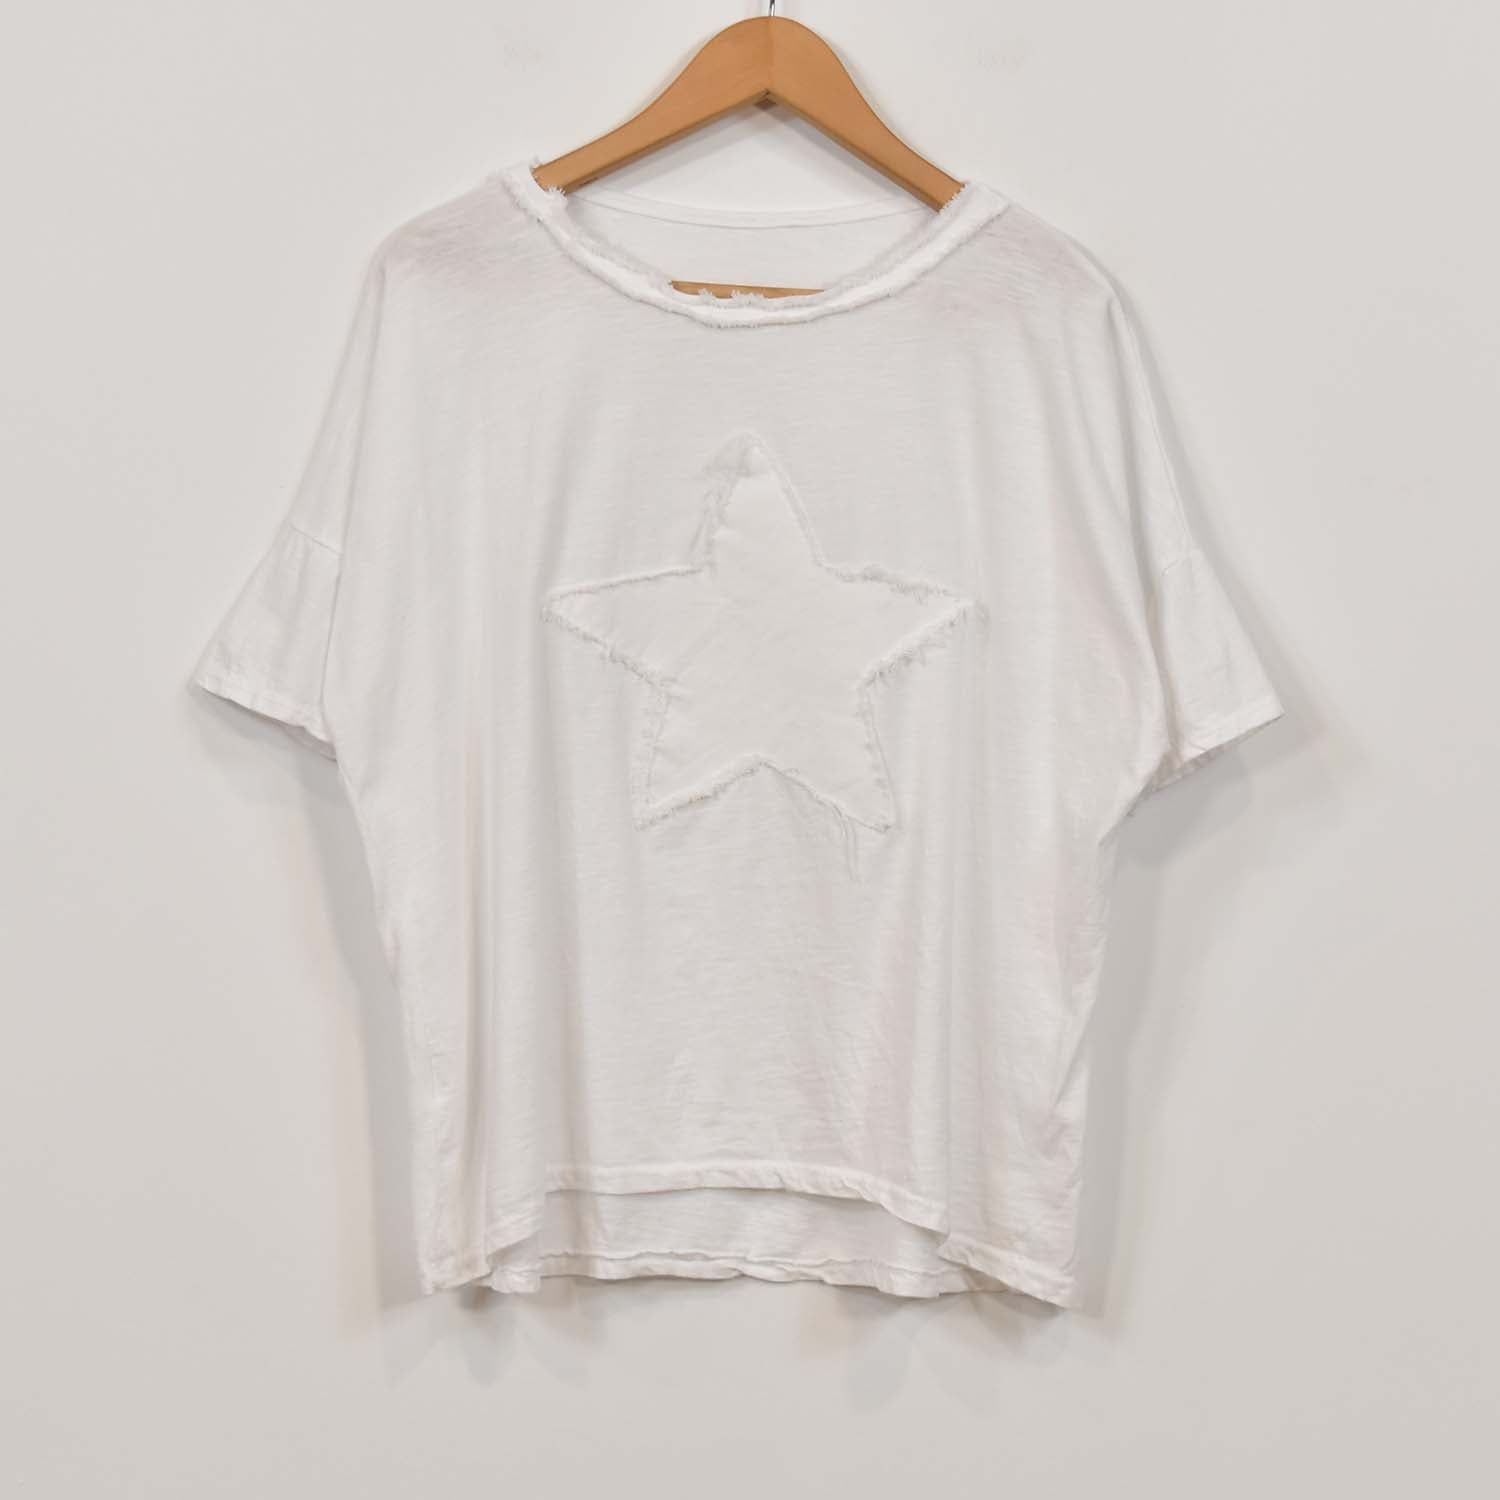 Camiseta estrella flecos blanca